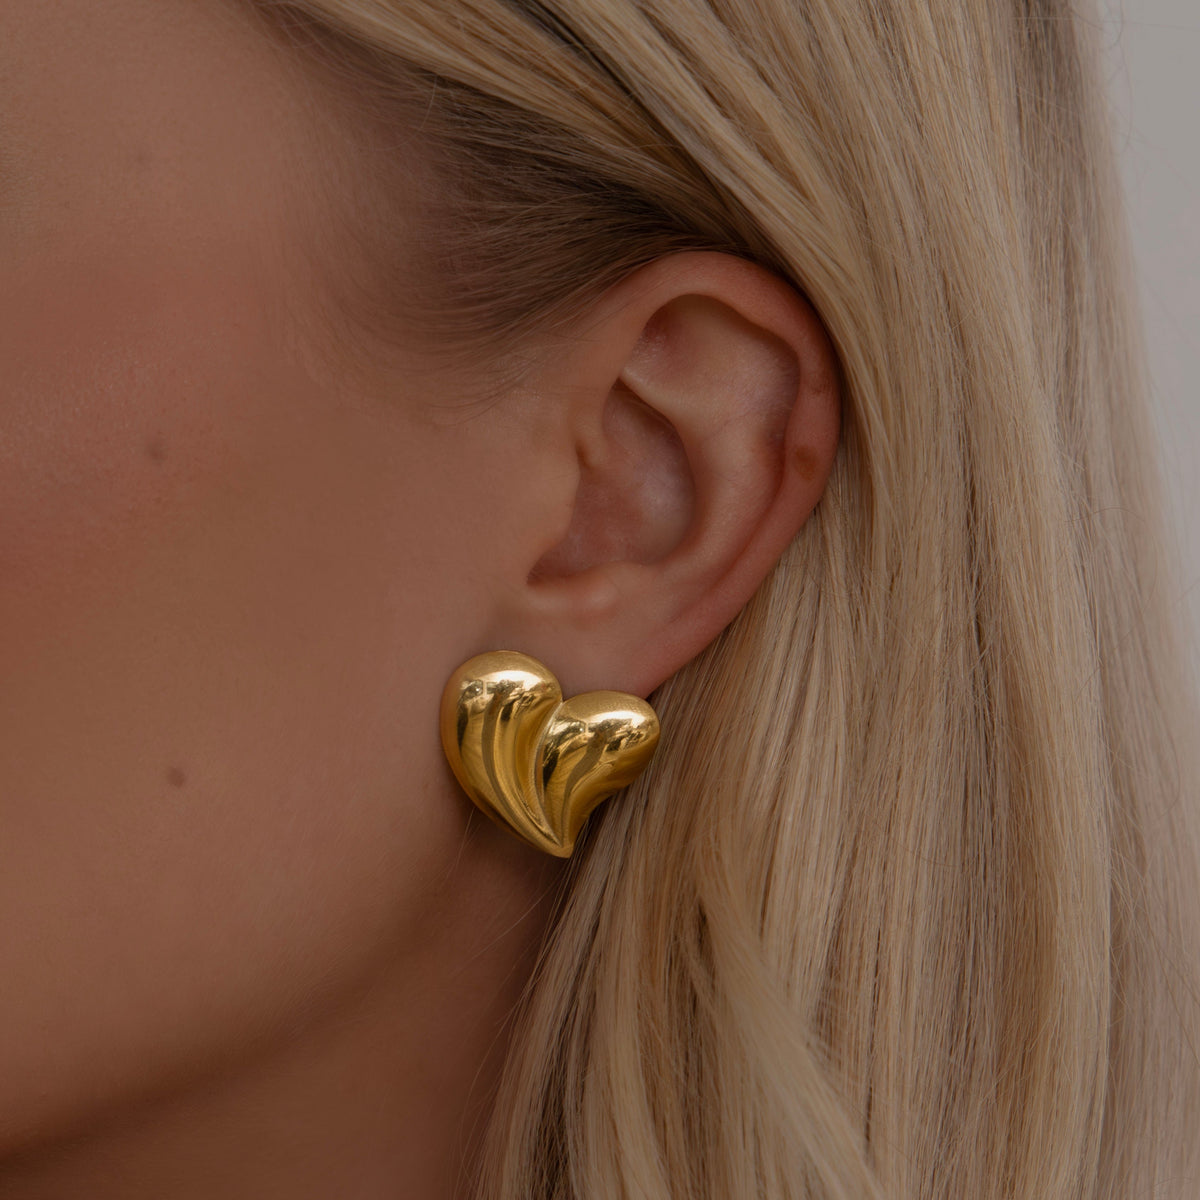 BohoMoon Stainless Steel Zen Stud Earrings Gold